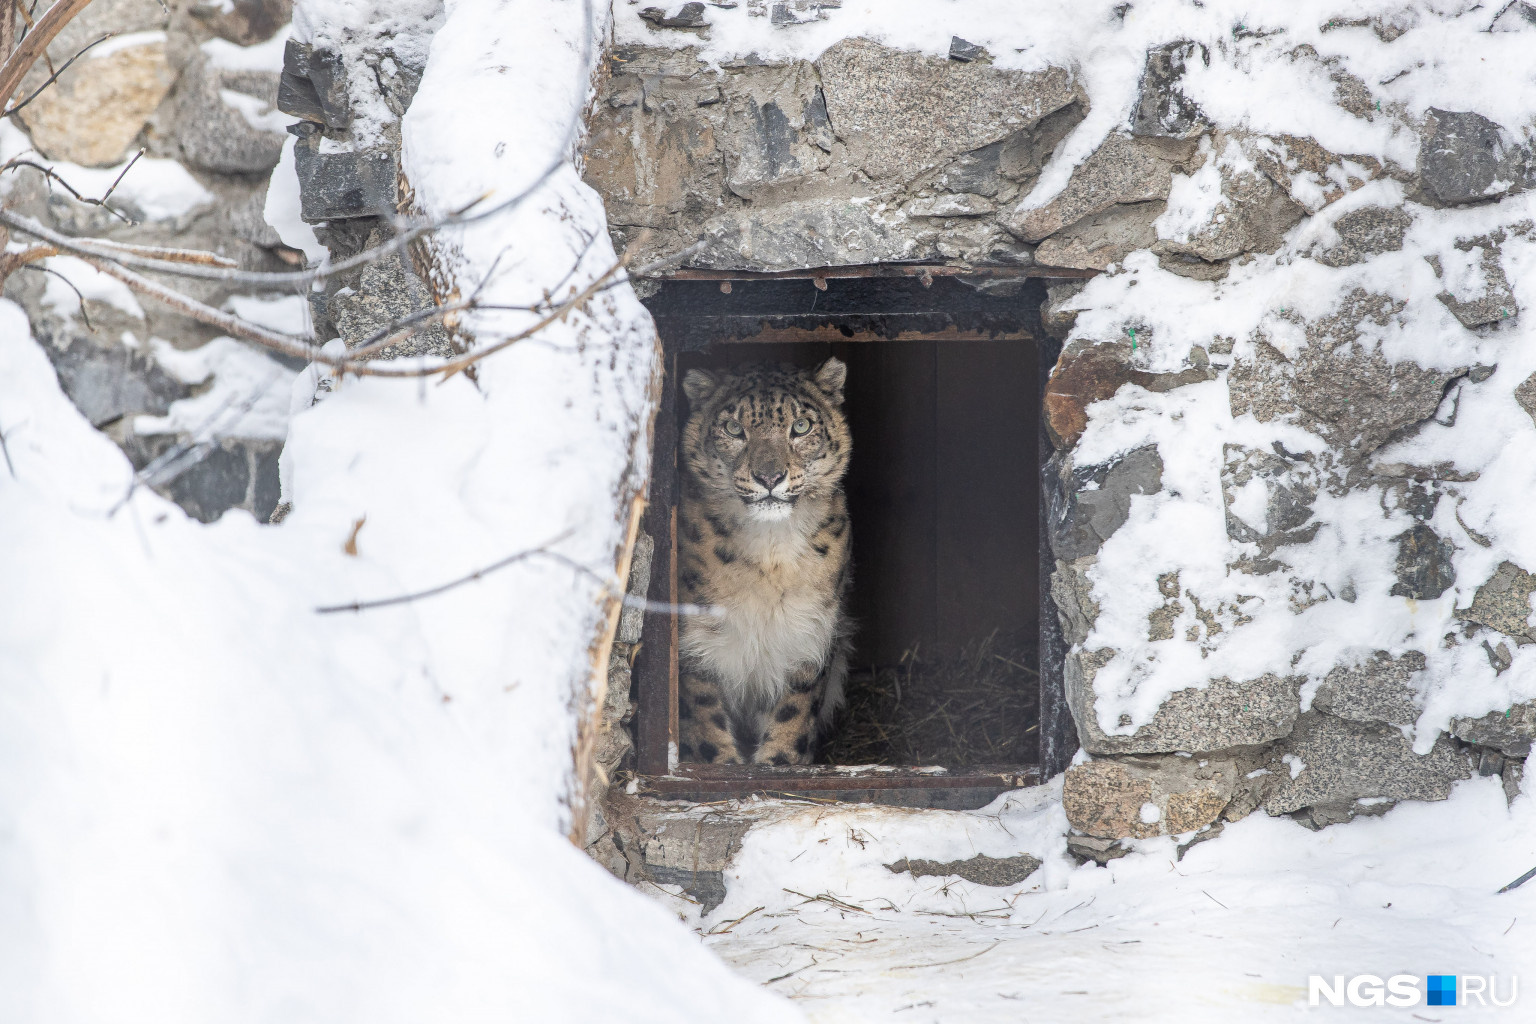 Самый скрытный представитель кошачьих снежный барс прячется и от посетителей